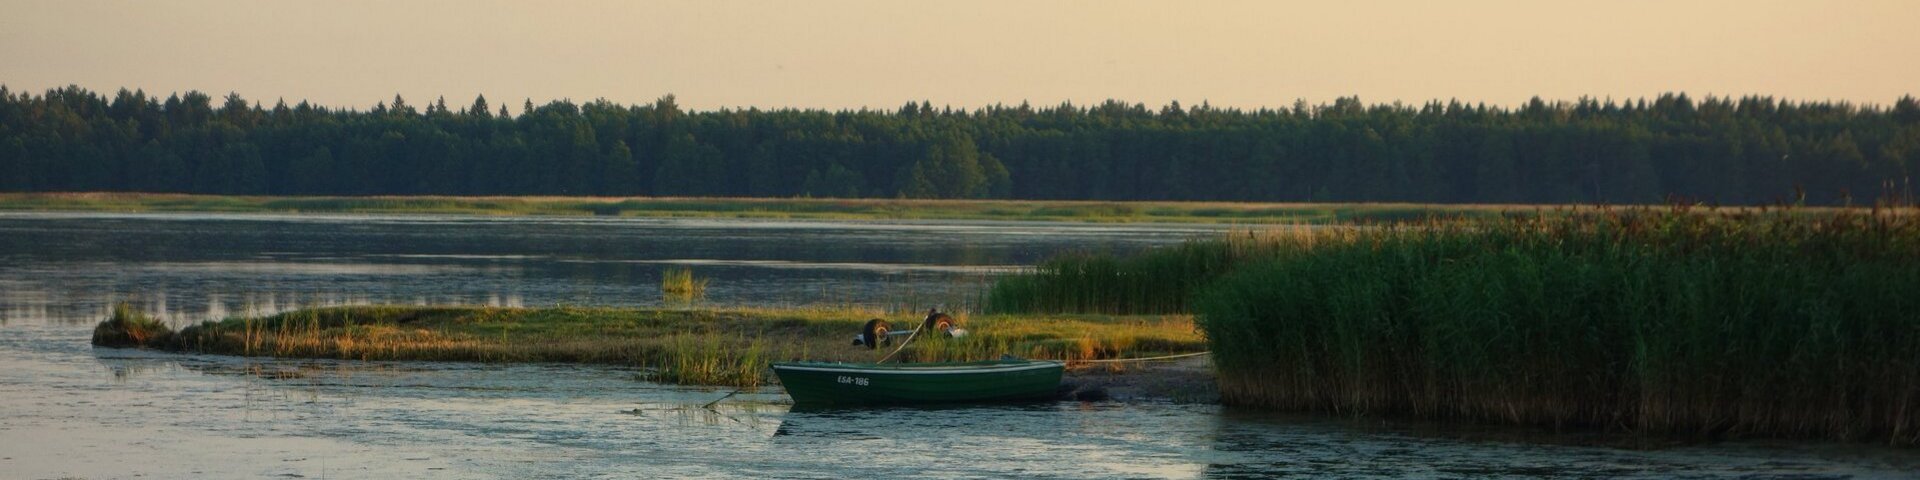 Kleiner Bootssteg in Estland